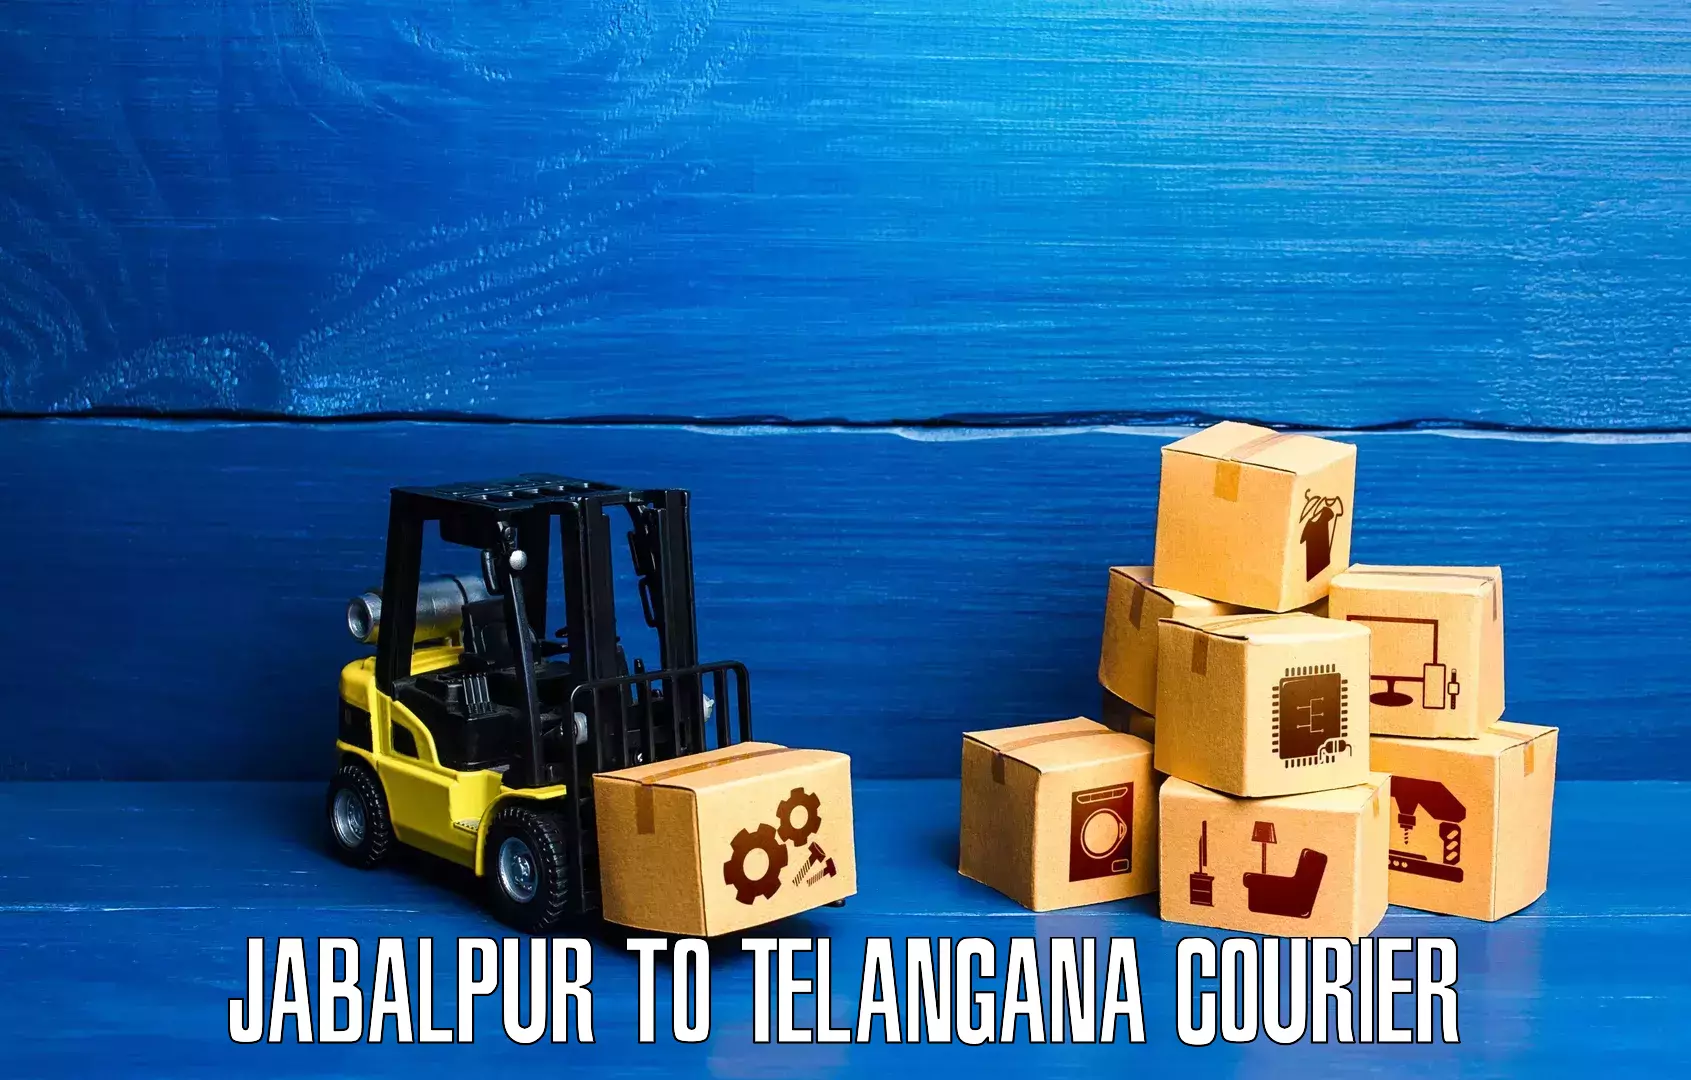 Professional parcel services Jabalpur to Patancheru